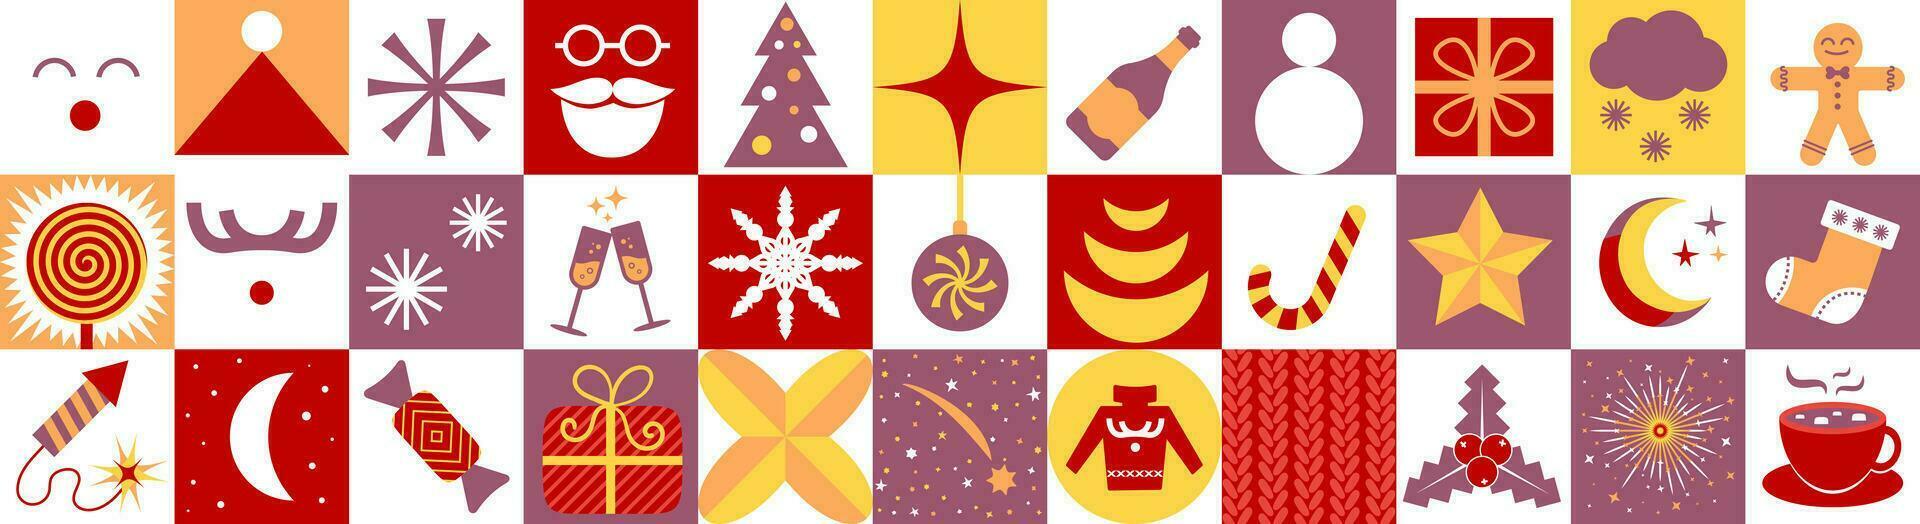 modern Weihnachten Advent Kalender Vorlage. ein einstellen von einfach Weihnachten Elemente ohne Termine im retro eben Stil. einstellen von Neu Jahr Symbole. Rentier, Weihnachten Baum, Geschenk, Kakao Tasse, rot Sweatshirt usw. vektor